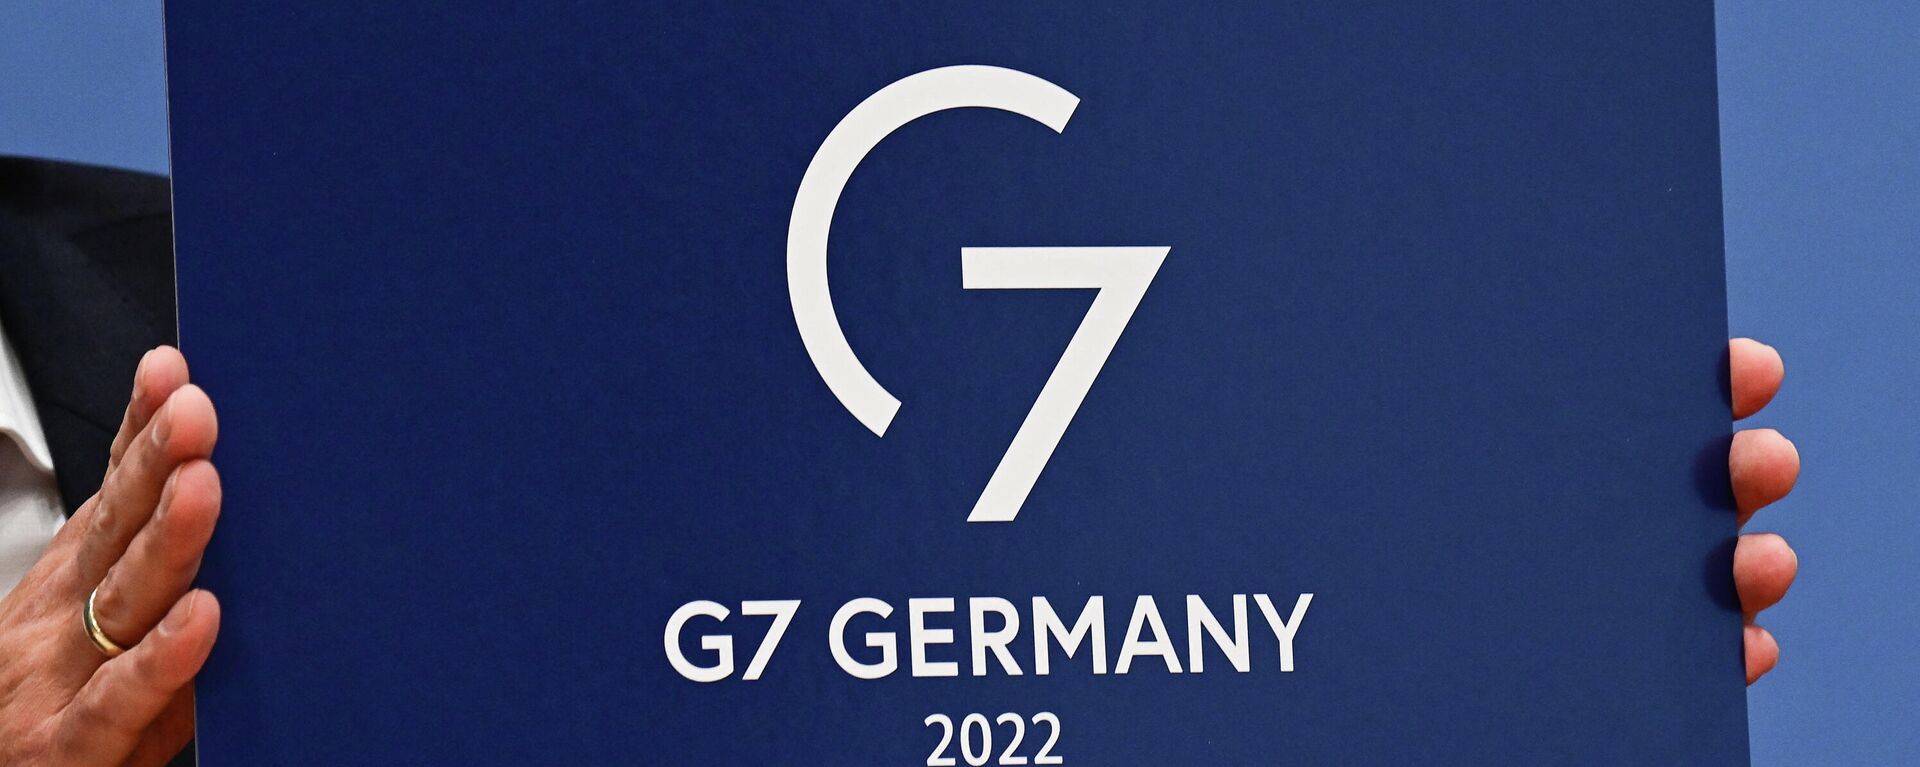 G7 Germania 2022 - Sputnik Moldova, 1920, 16.02.2022